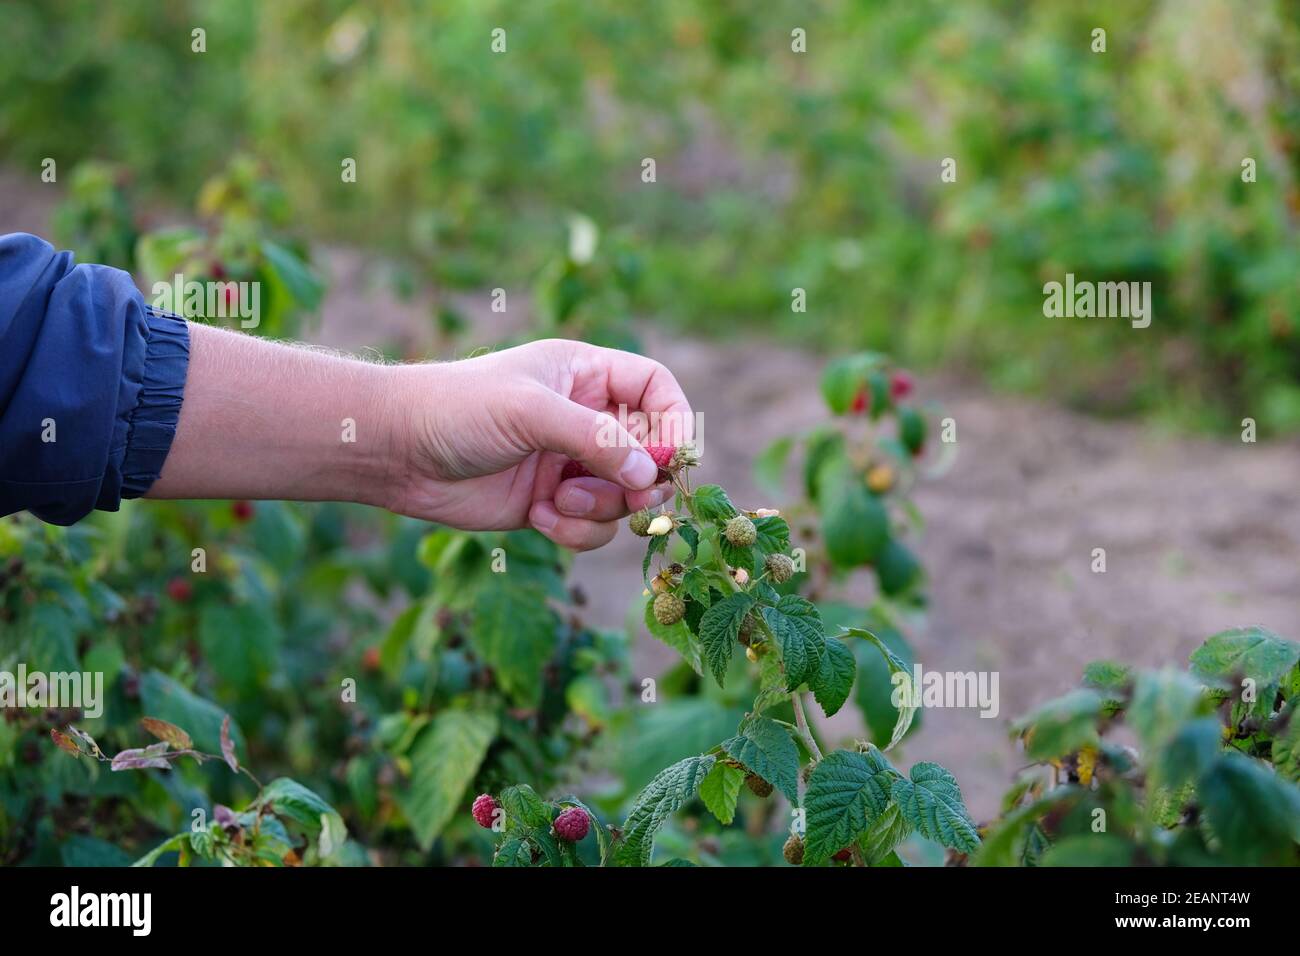 Hände pflücken süße Himbeere. Beerenernte in der Herbstsaison, Saisonarbeiter in Arbeit auf Himbeerplantage. Stockfoto